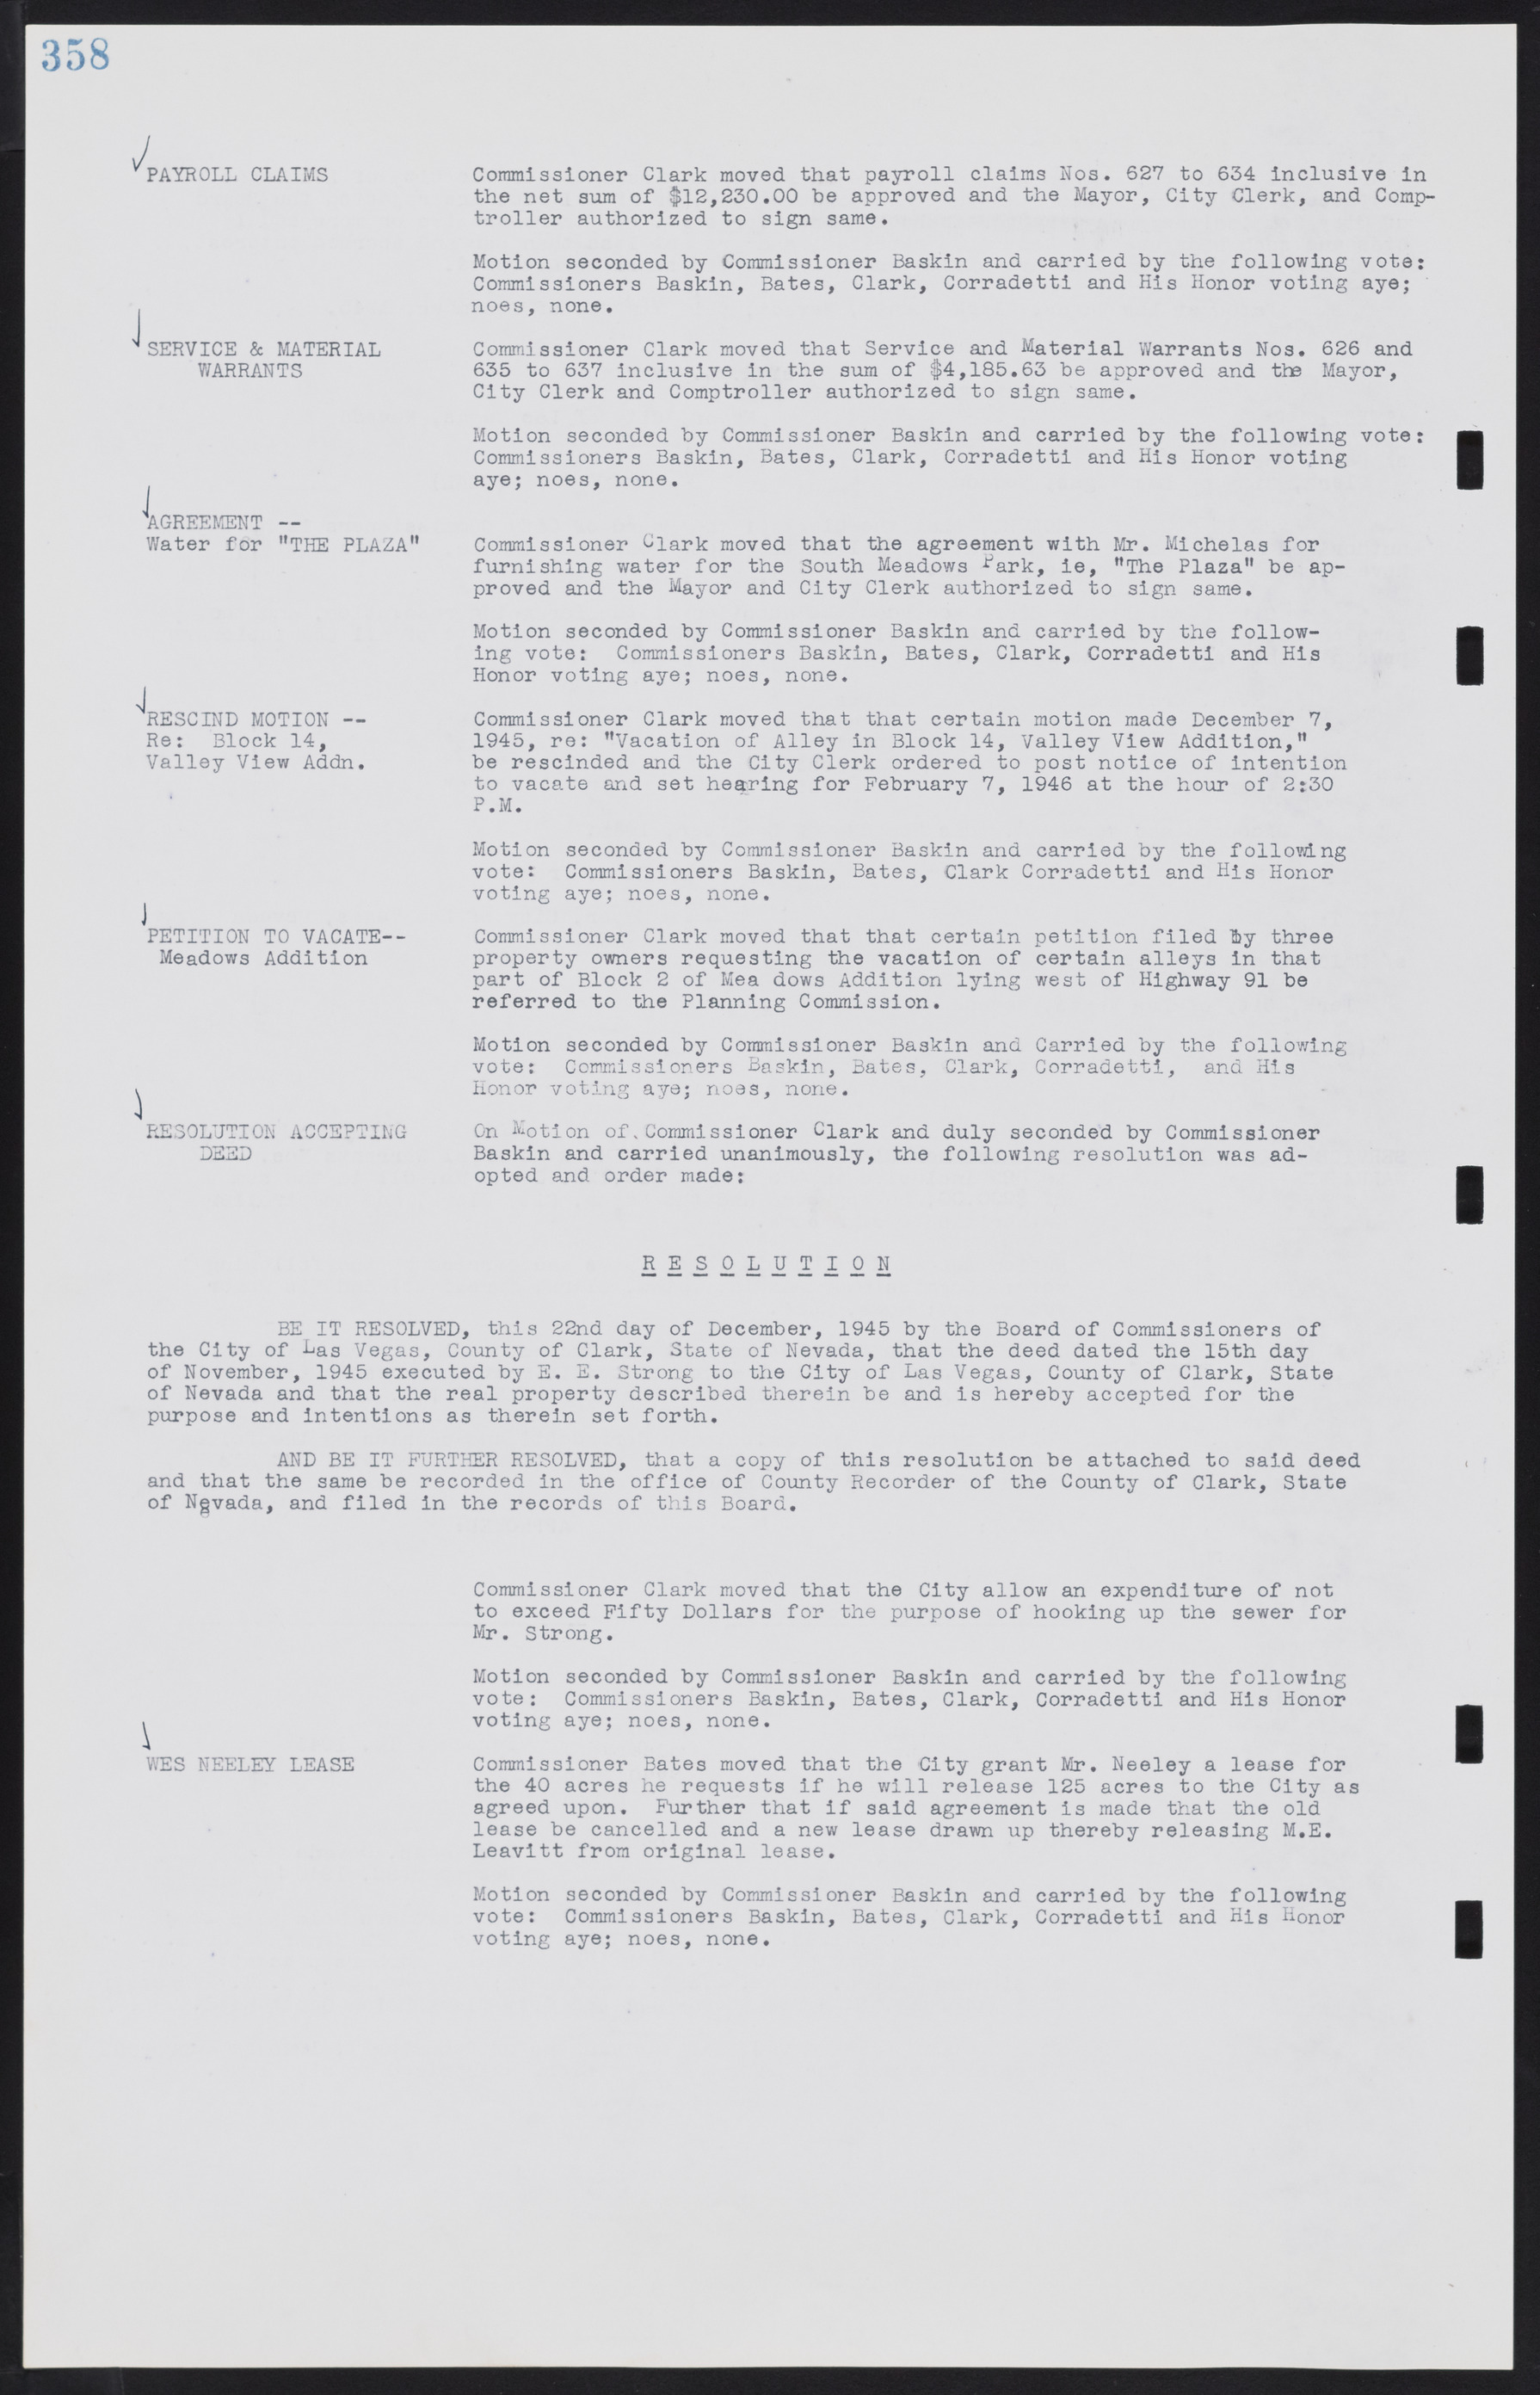 Las Vegas City Commission Minutes, August 11, 1942 to December 30, 1946, lvc000005-383